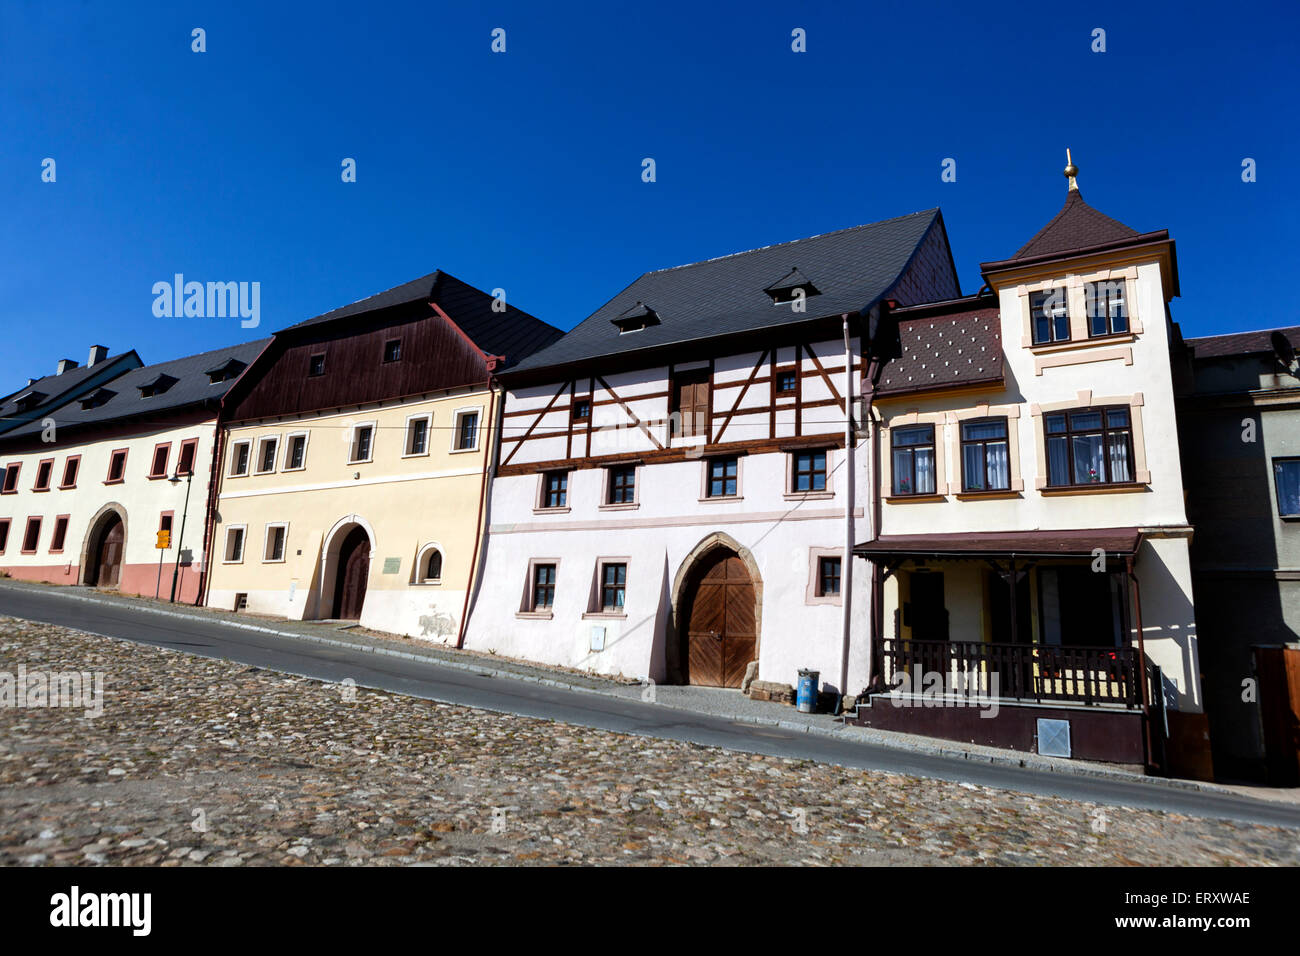 Tschechische Republik Utery, eine kleine malerische Stadt, Plzen Region Westböhmen, Renaissance Stadthäuser gepflasterten Platz Stockfoto